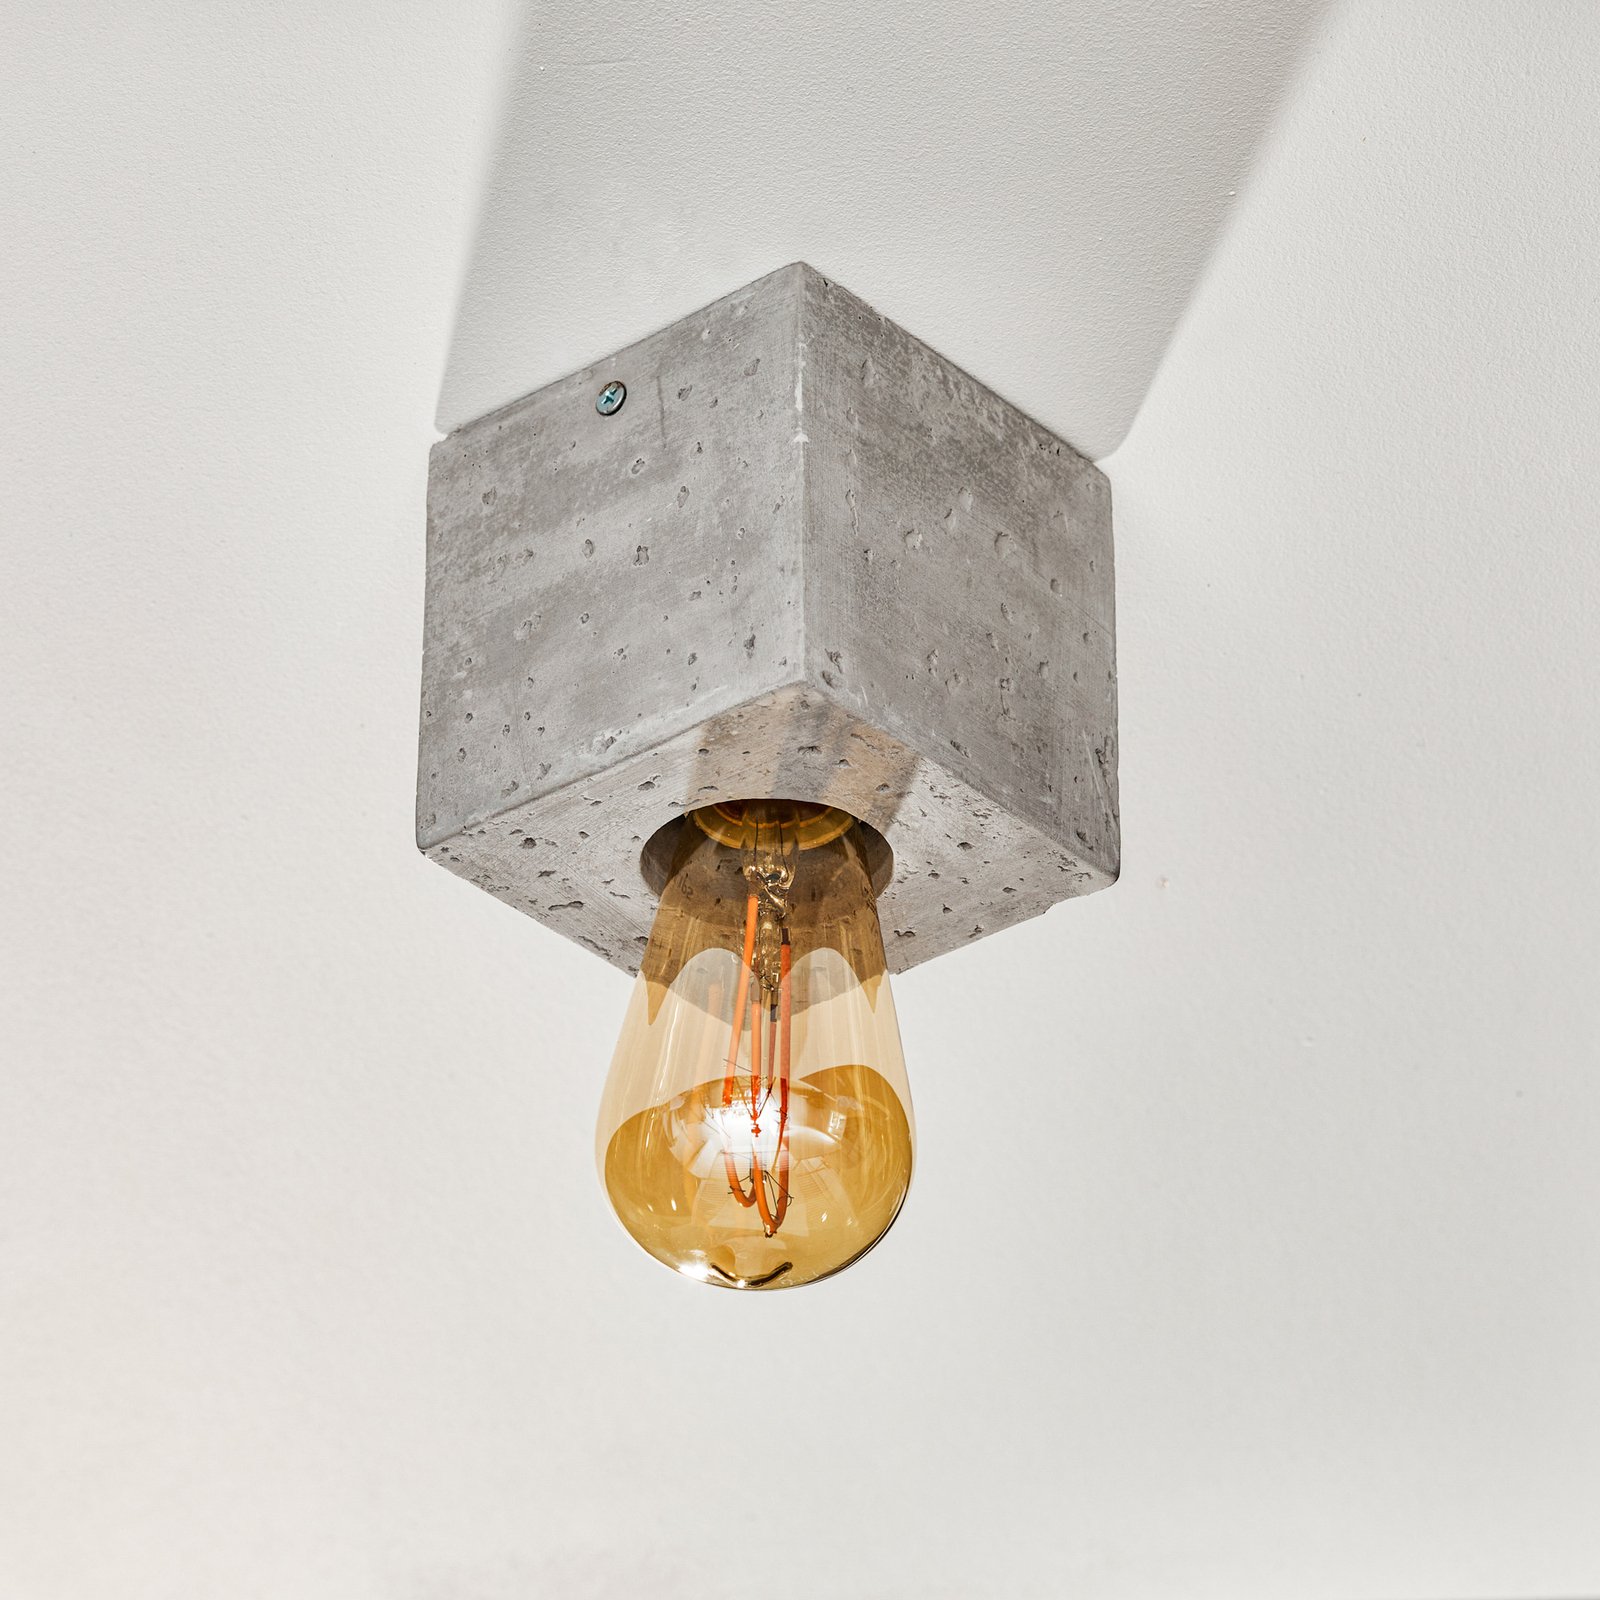 Lampa sufitowa Akira z betonu w formie sześcianu